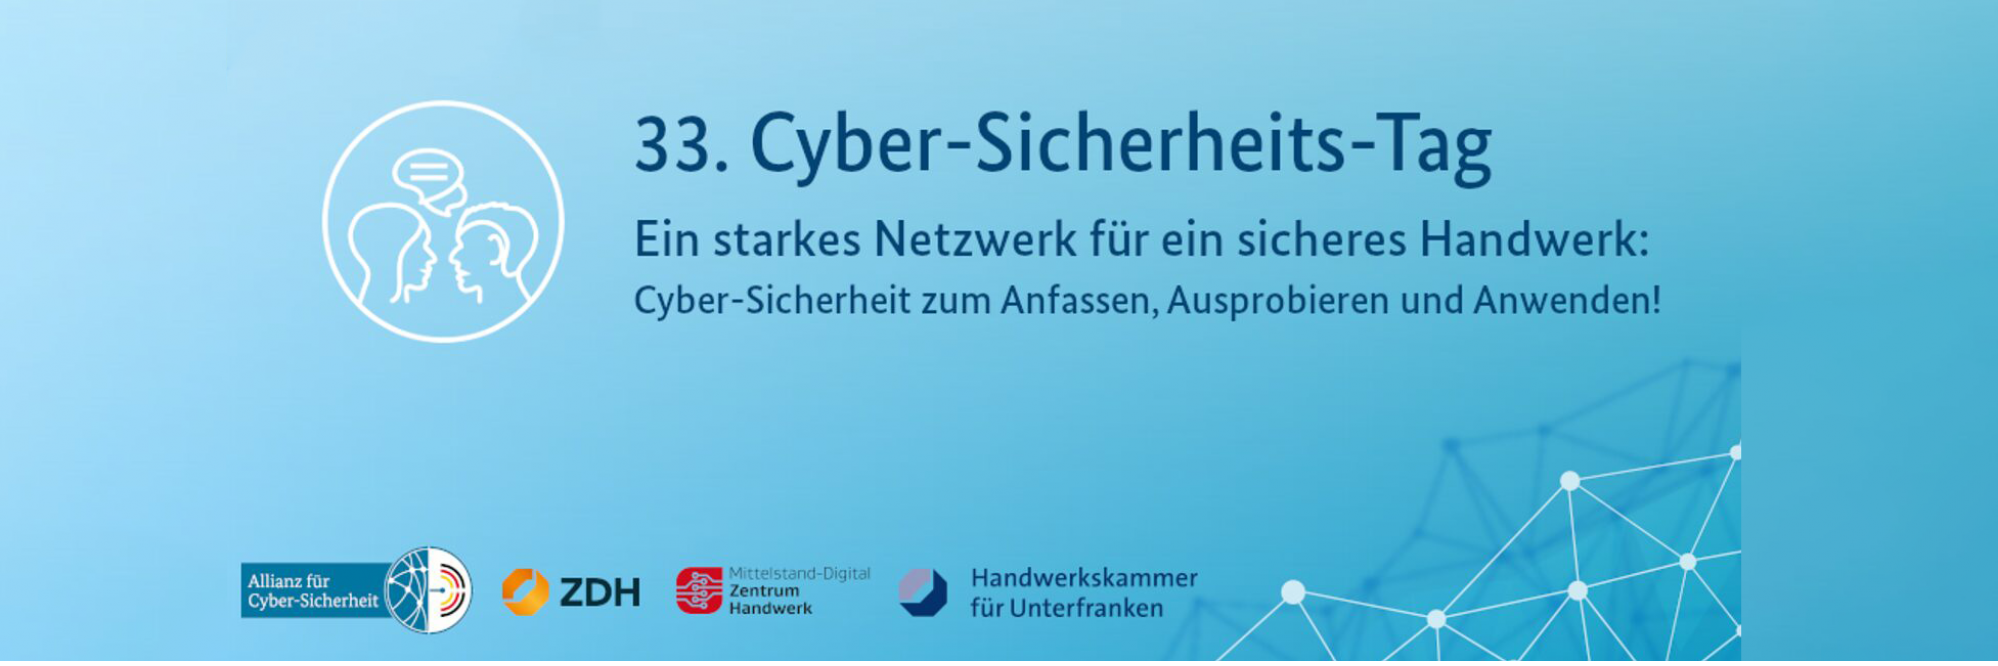 Cybersicherheitstag für das Handwerk in Würzburg